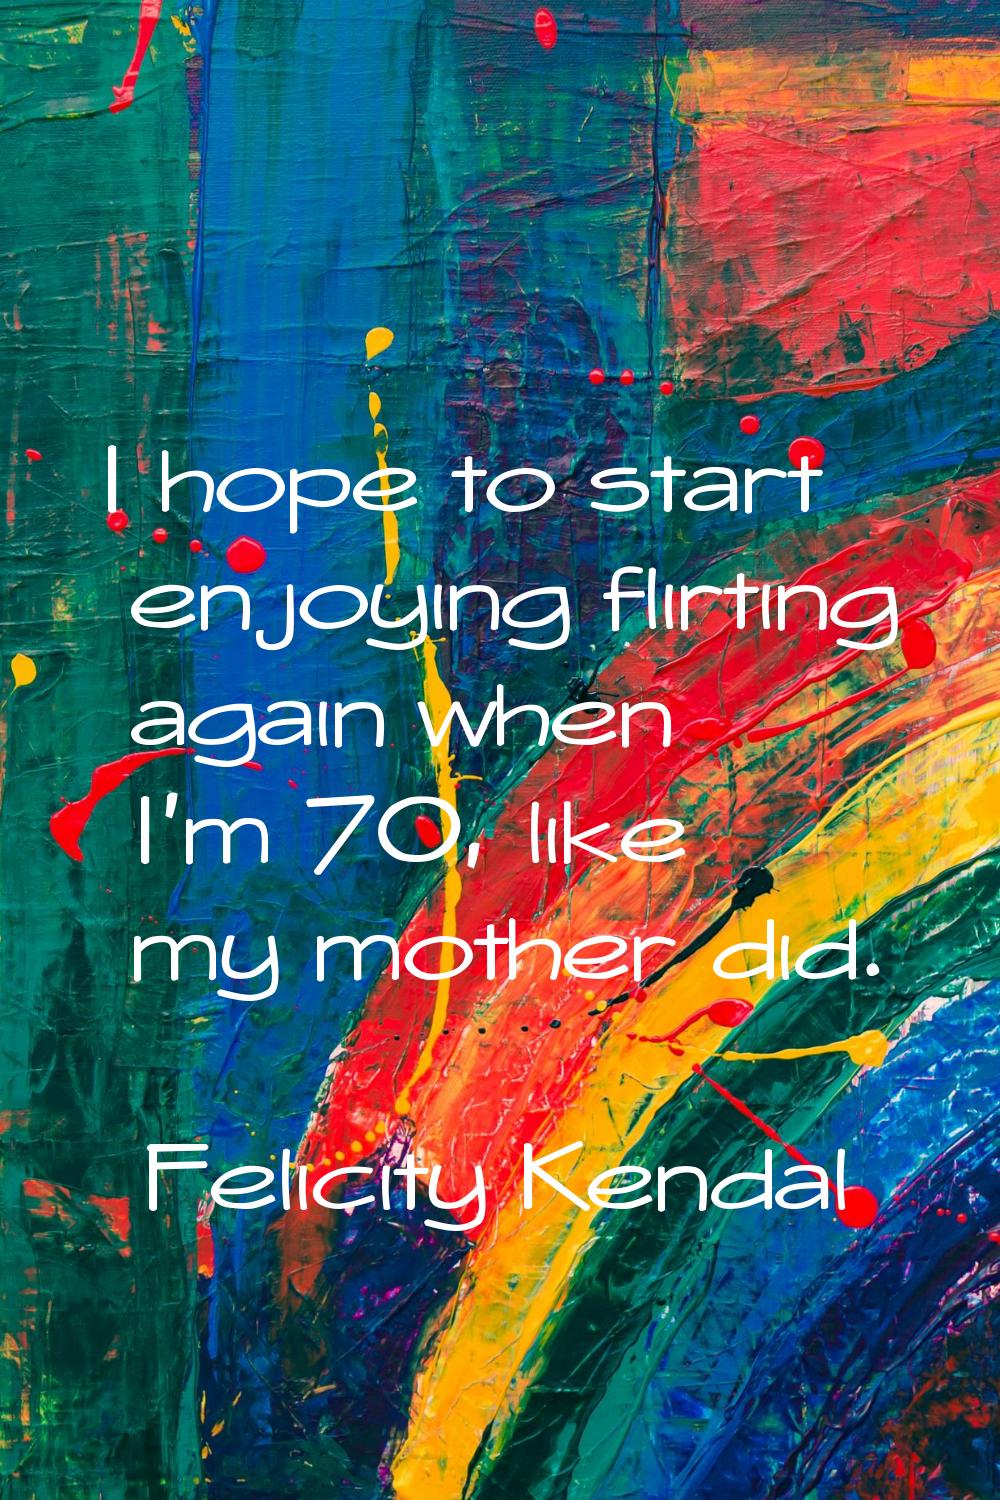 I hope to start enjoying flirting again when I'm 70, like my mother did.